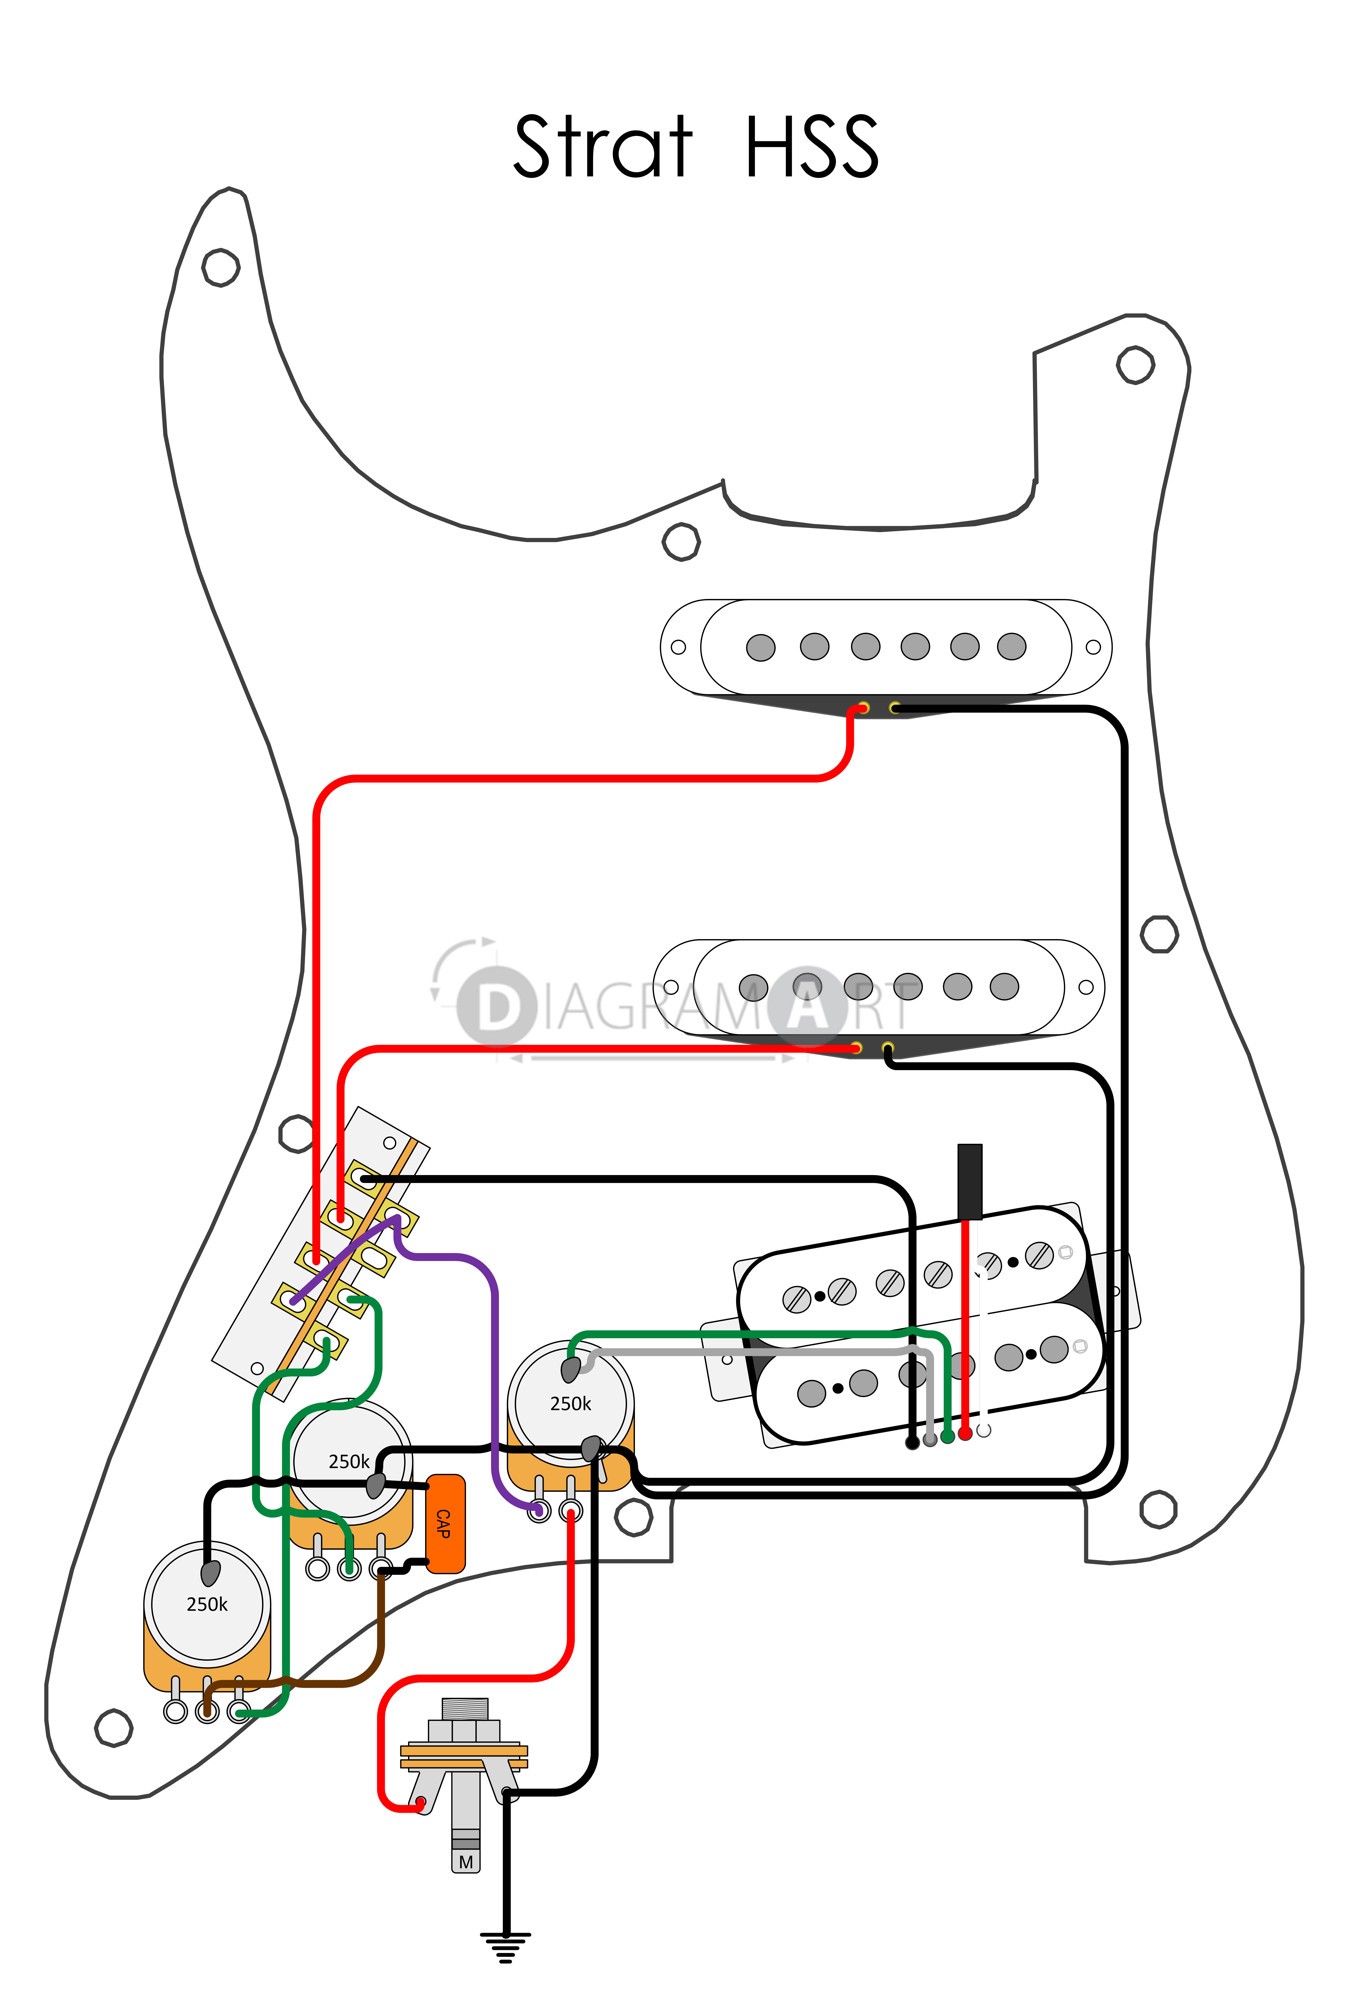 Easy Guitar Wiring Diagram Valid Guitar Wiring Diagram Editor New Electric Guitar Wiring Strat Hss